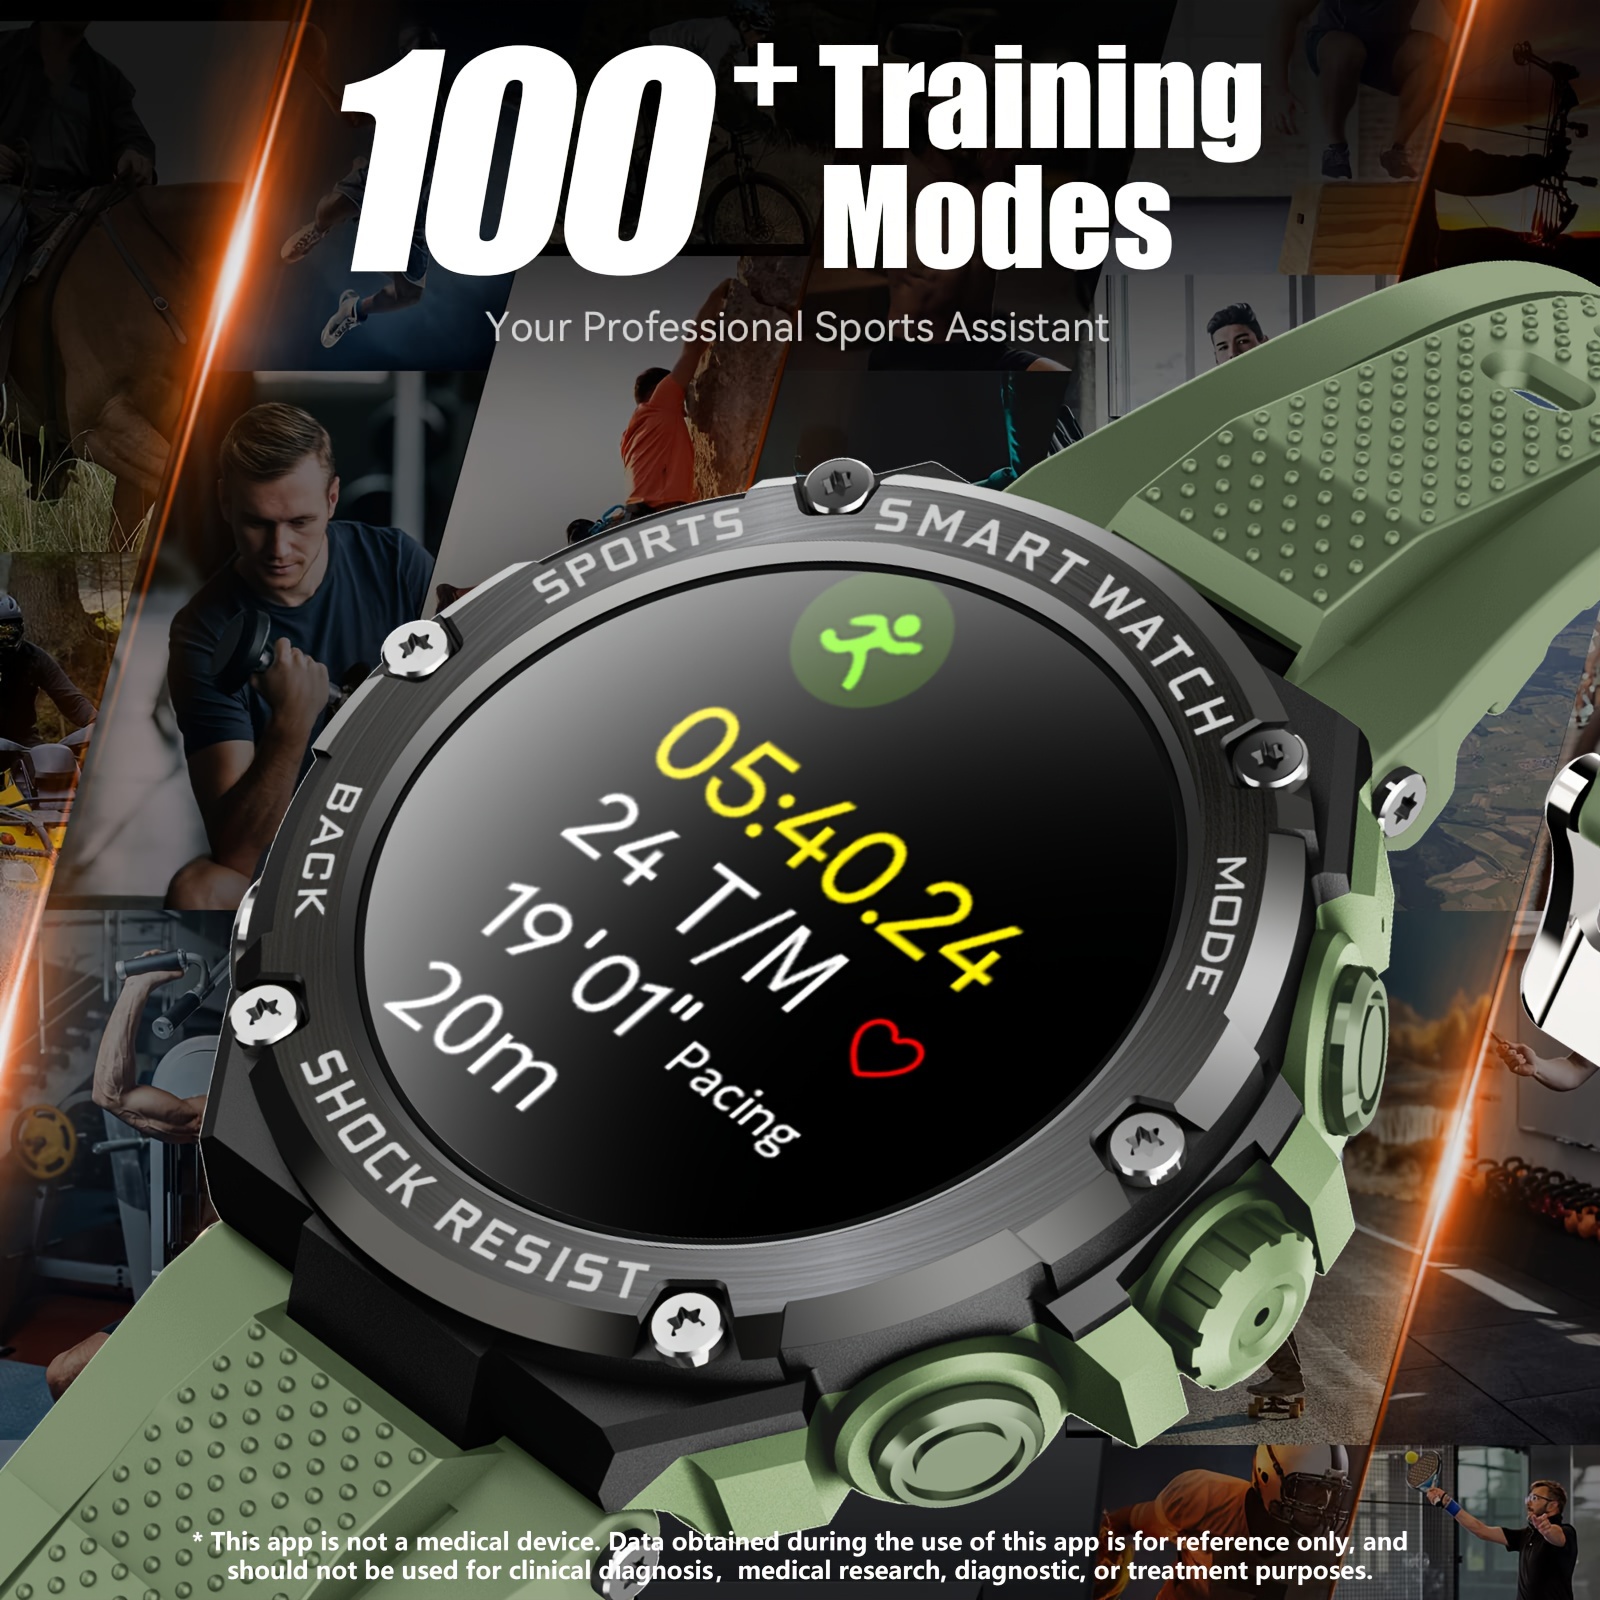 Reloj inteligente militar para hombre con llamada (respuesta/hace) Reloj  deportivo táctico para exteriores, resistente de 1.85 pulgadas, pantalla